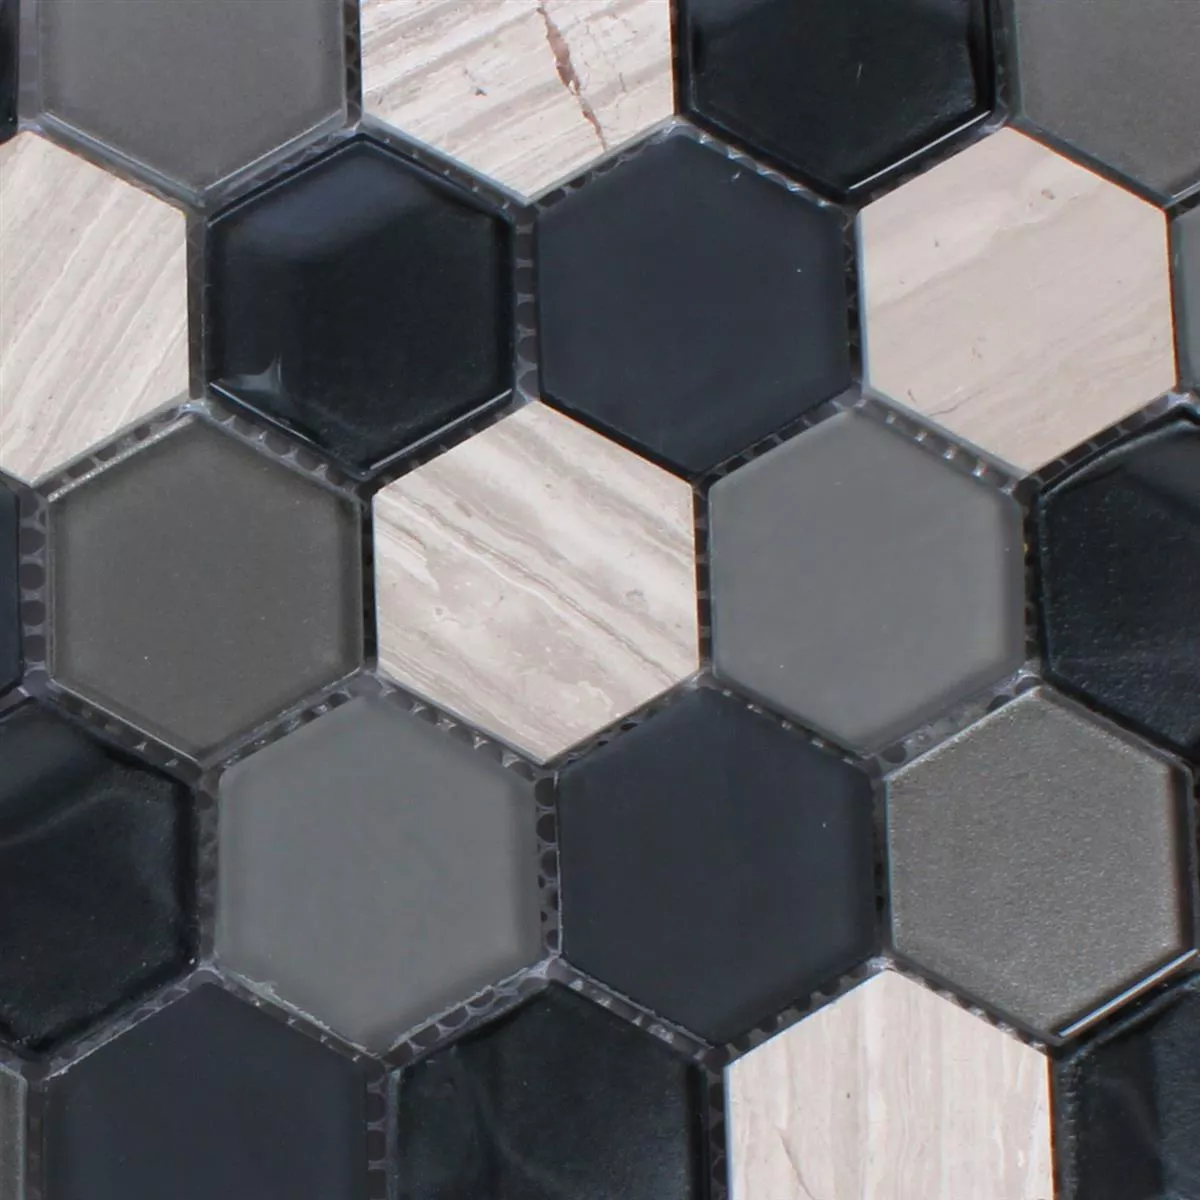 Mosaikfliesen Hexagon Glas Naturstein Schwarz Grau 3D